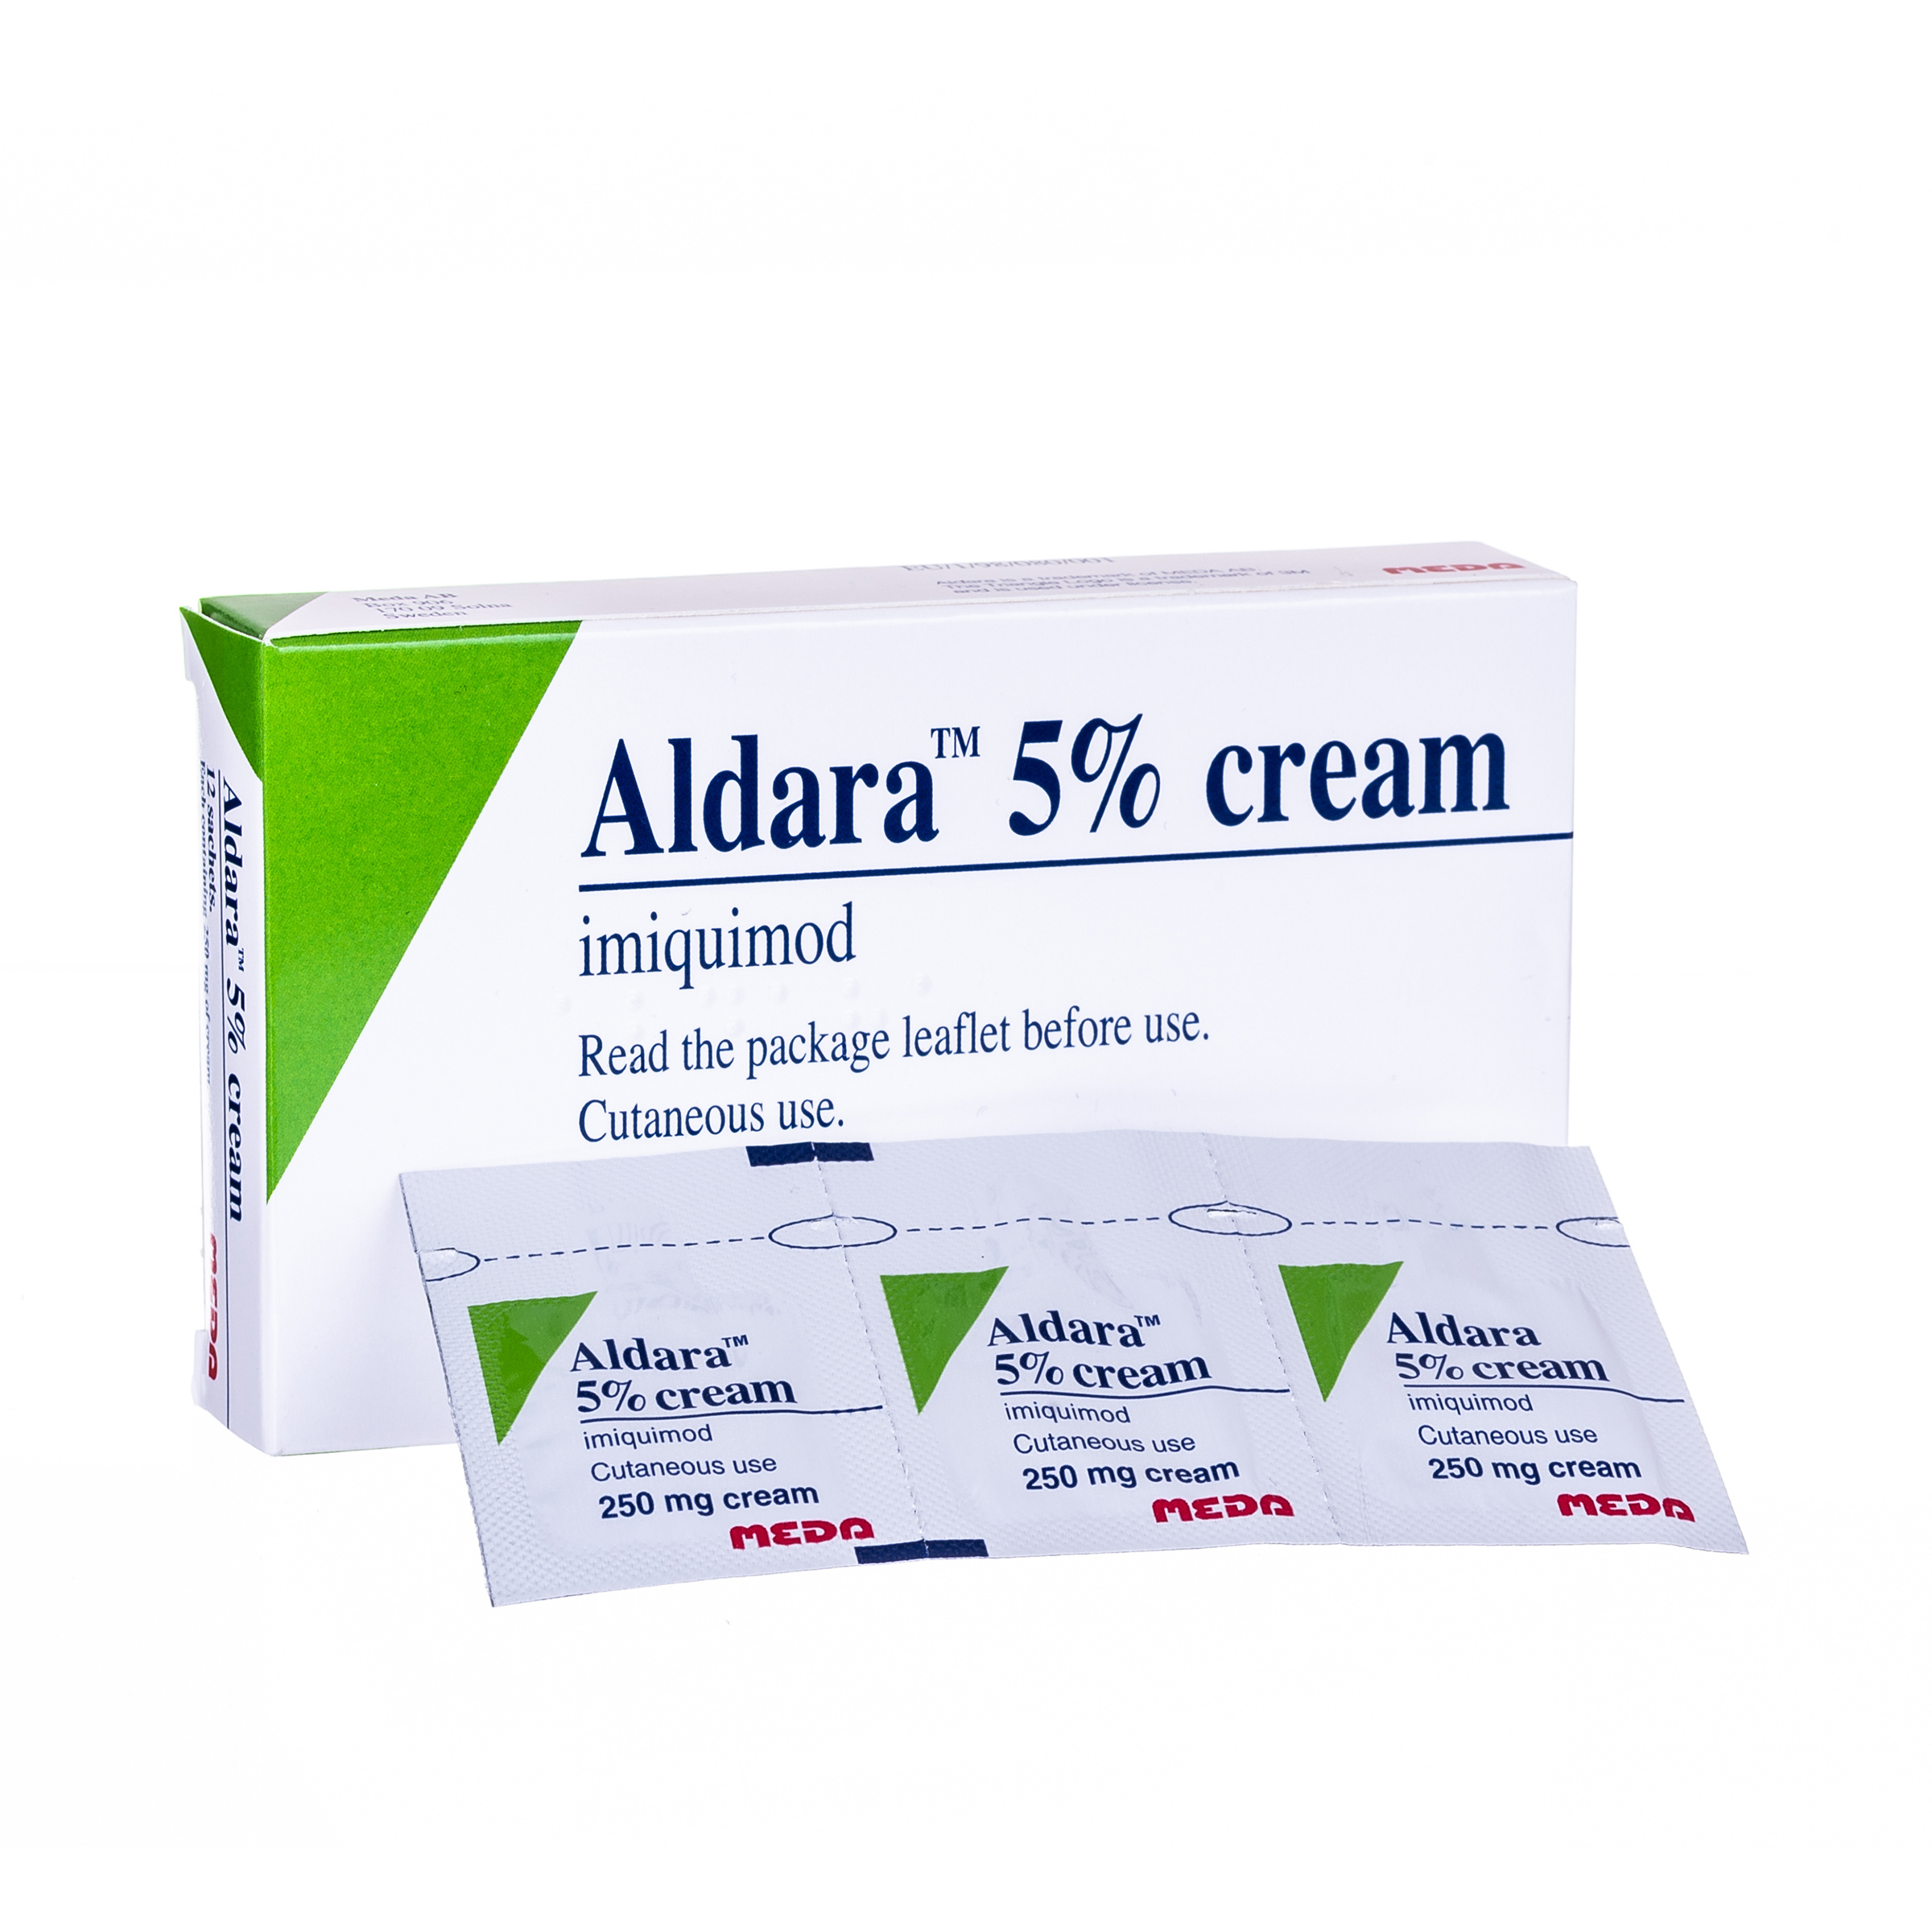 buy aldara cream online no prescription